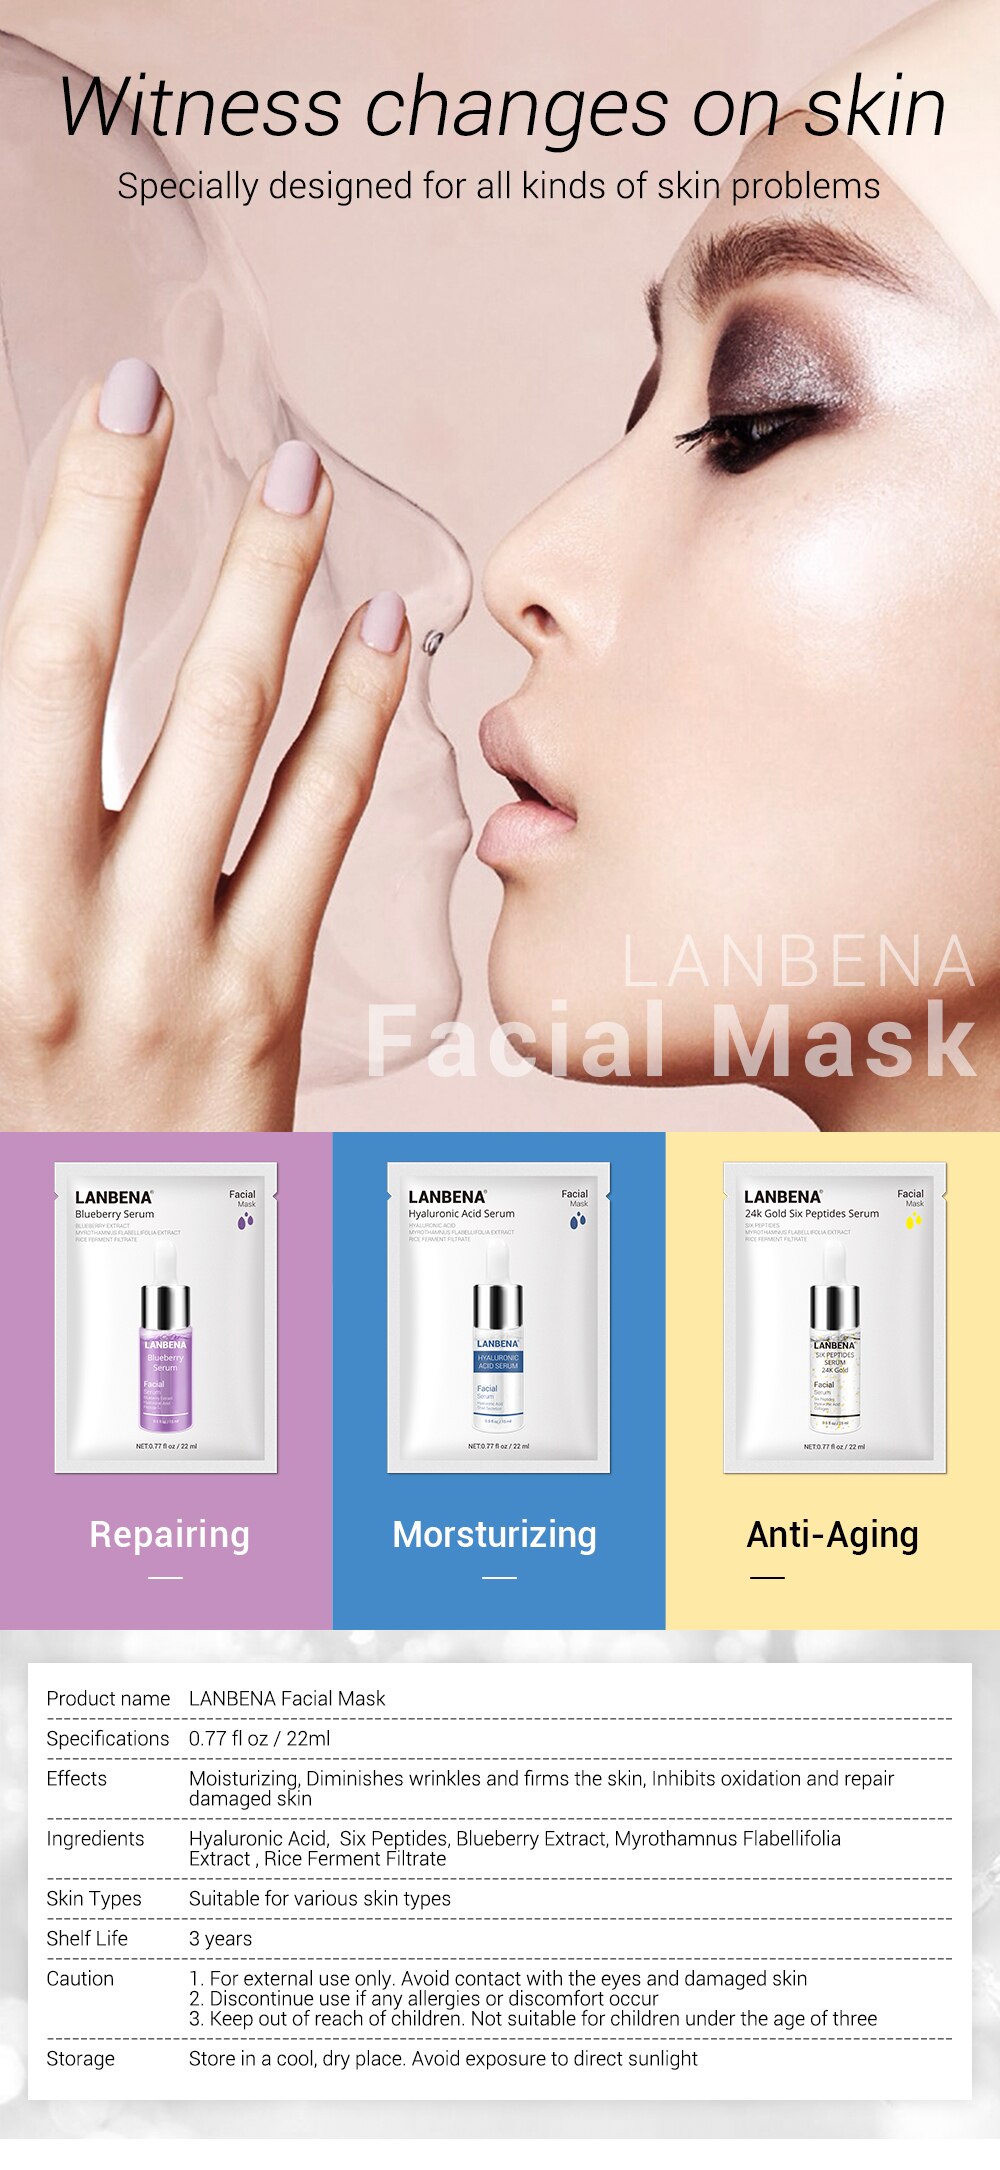 LANBENA Face Masks Hyaluronic Acid Vitamin C Serum Blueberry Sheet Mask Moisturize Whitening Anti-Aging Water-Locking Skin Care